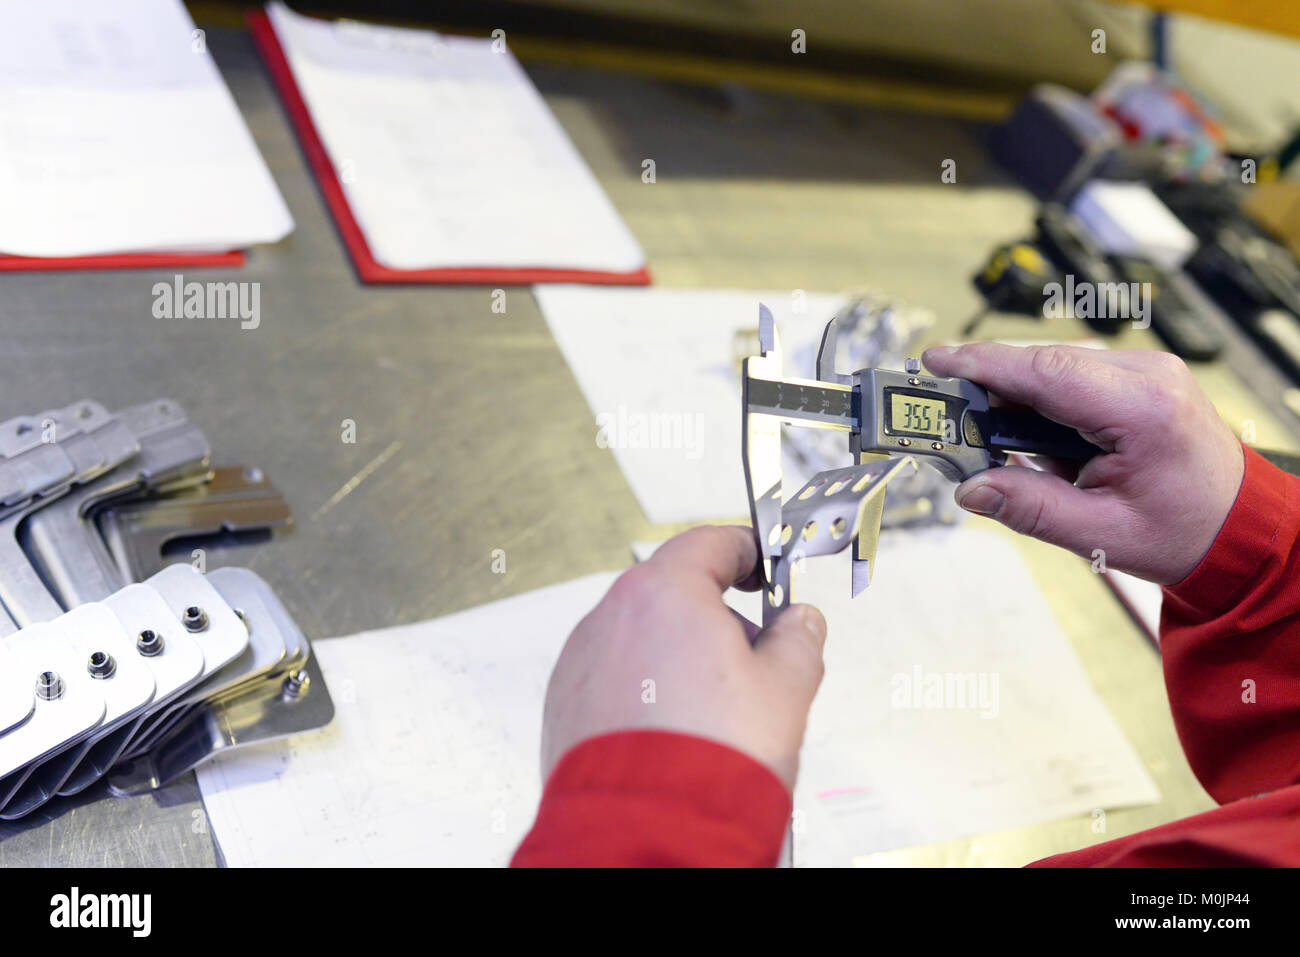 Los trabajadores industriales inspección de piezas de trabajo de precisión con dispositivo de medición Foto de stock